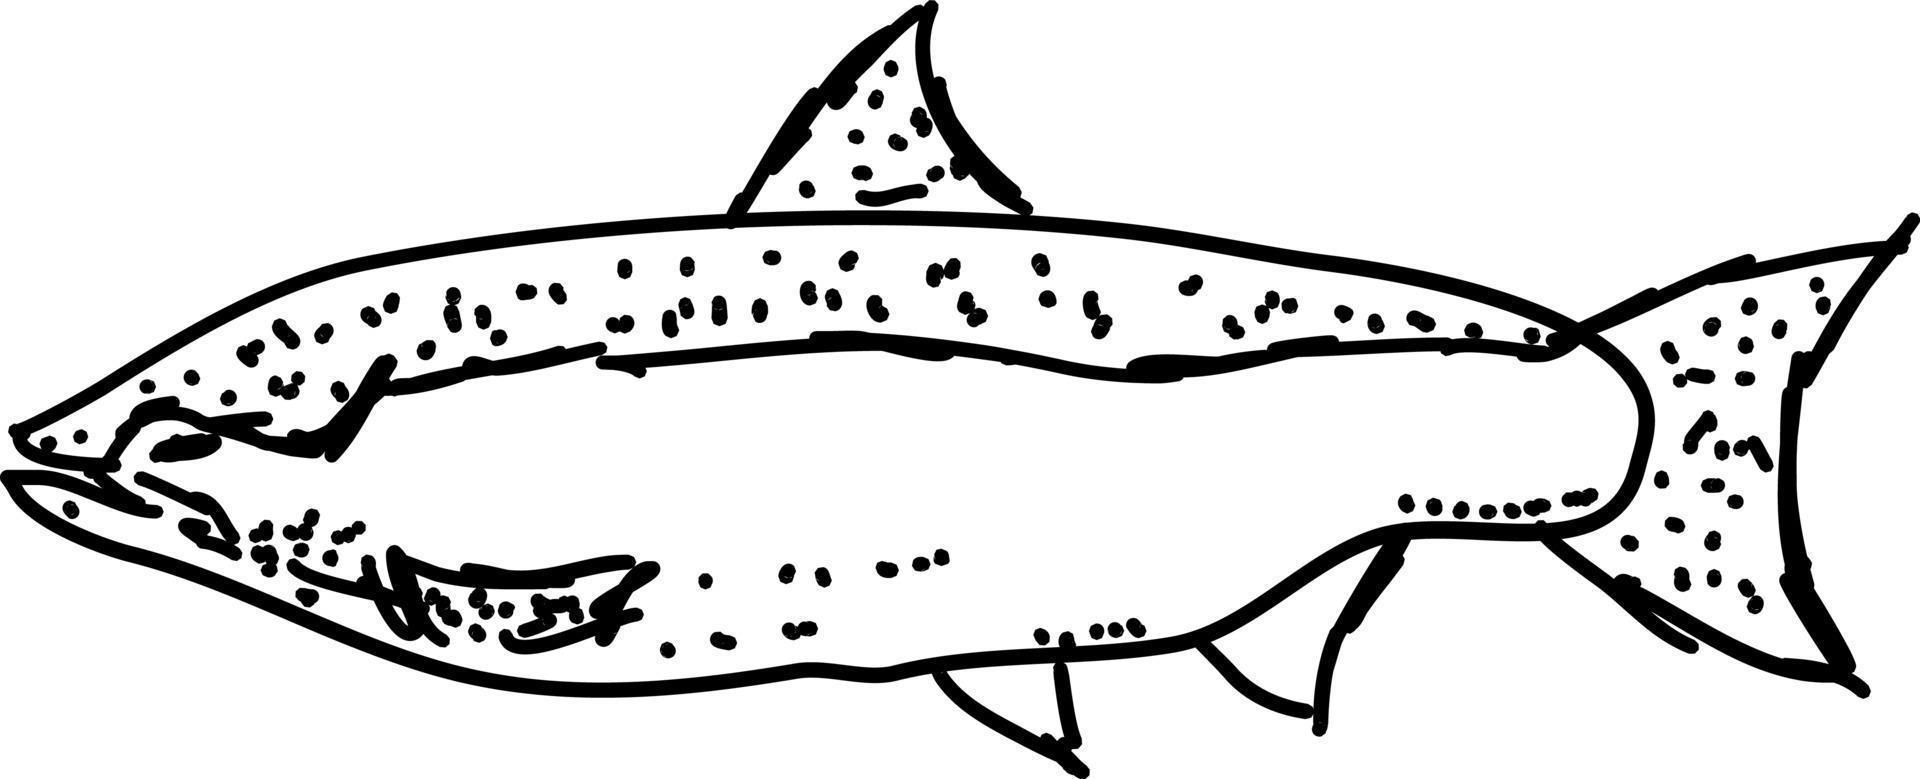 Fischzeichnung, Illustration, Vektor auf weißem Hintergrund.